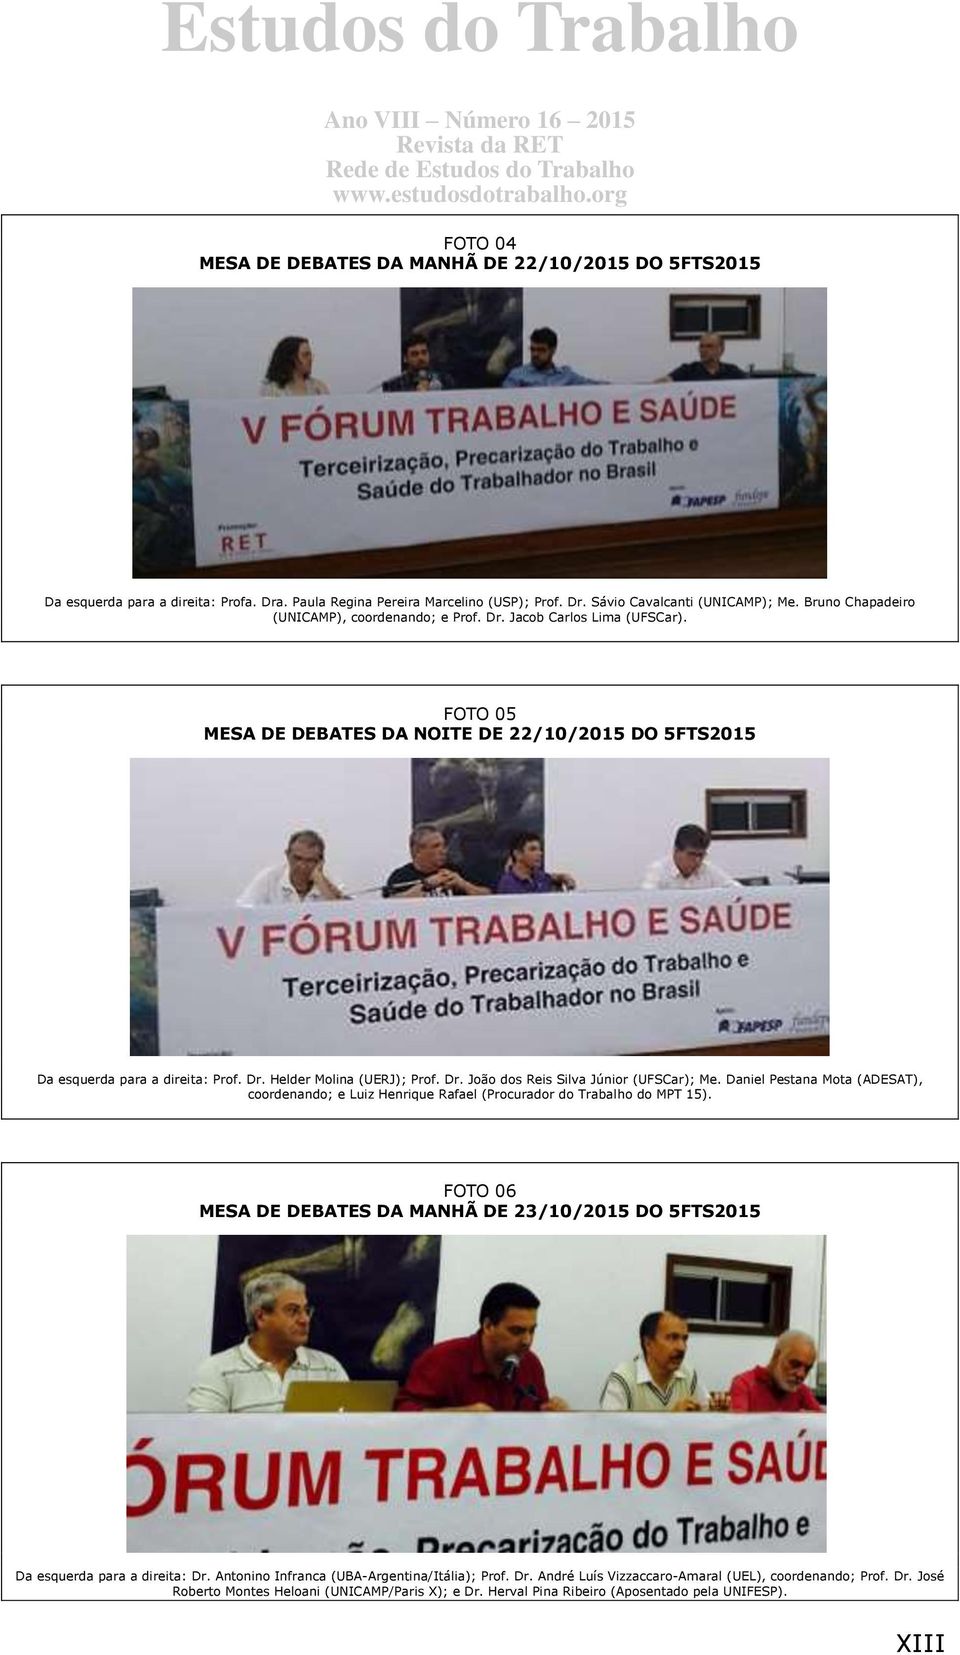 Dr. João dos Reis Silva Júnior (UFSCar); Me. Daniel Pestana Mota (ADESAT), coordenando; e Luiz Henrique Rafael (Procurador do Trabalho do MPT 15).